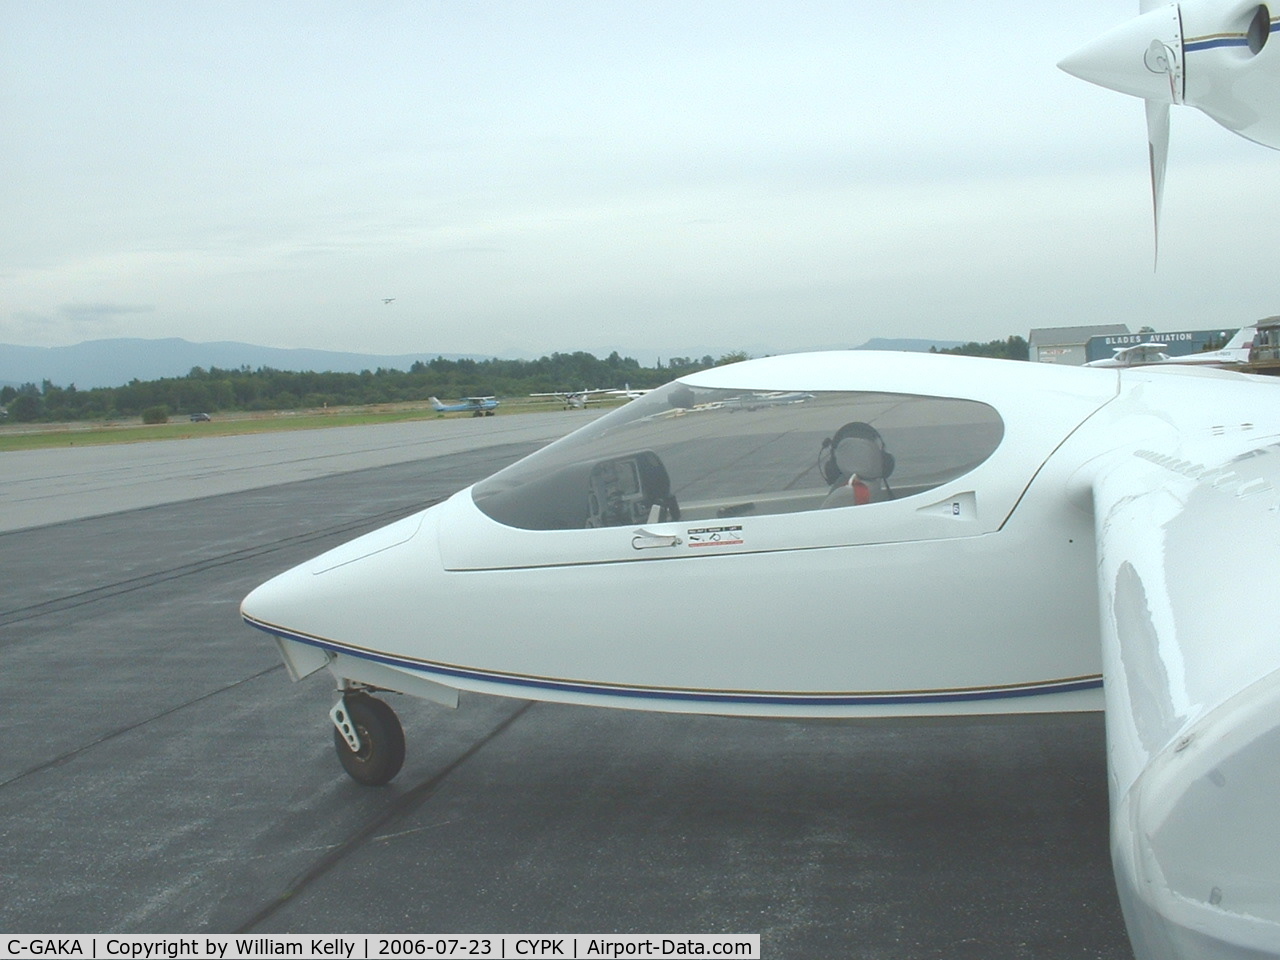 C-GAKA, 2000 Seawind 3000 C/N 46, Seawind 3000 just after landing Pitt Meadows